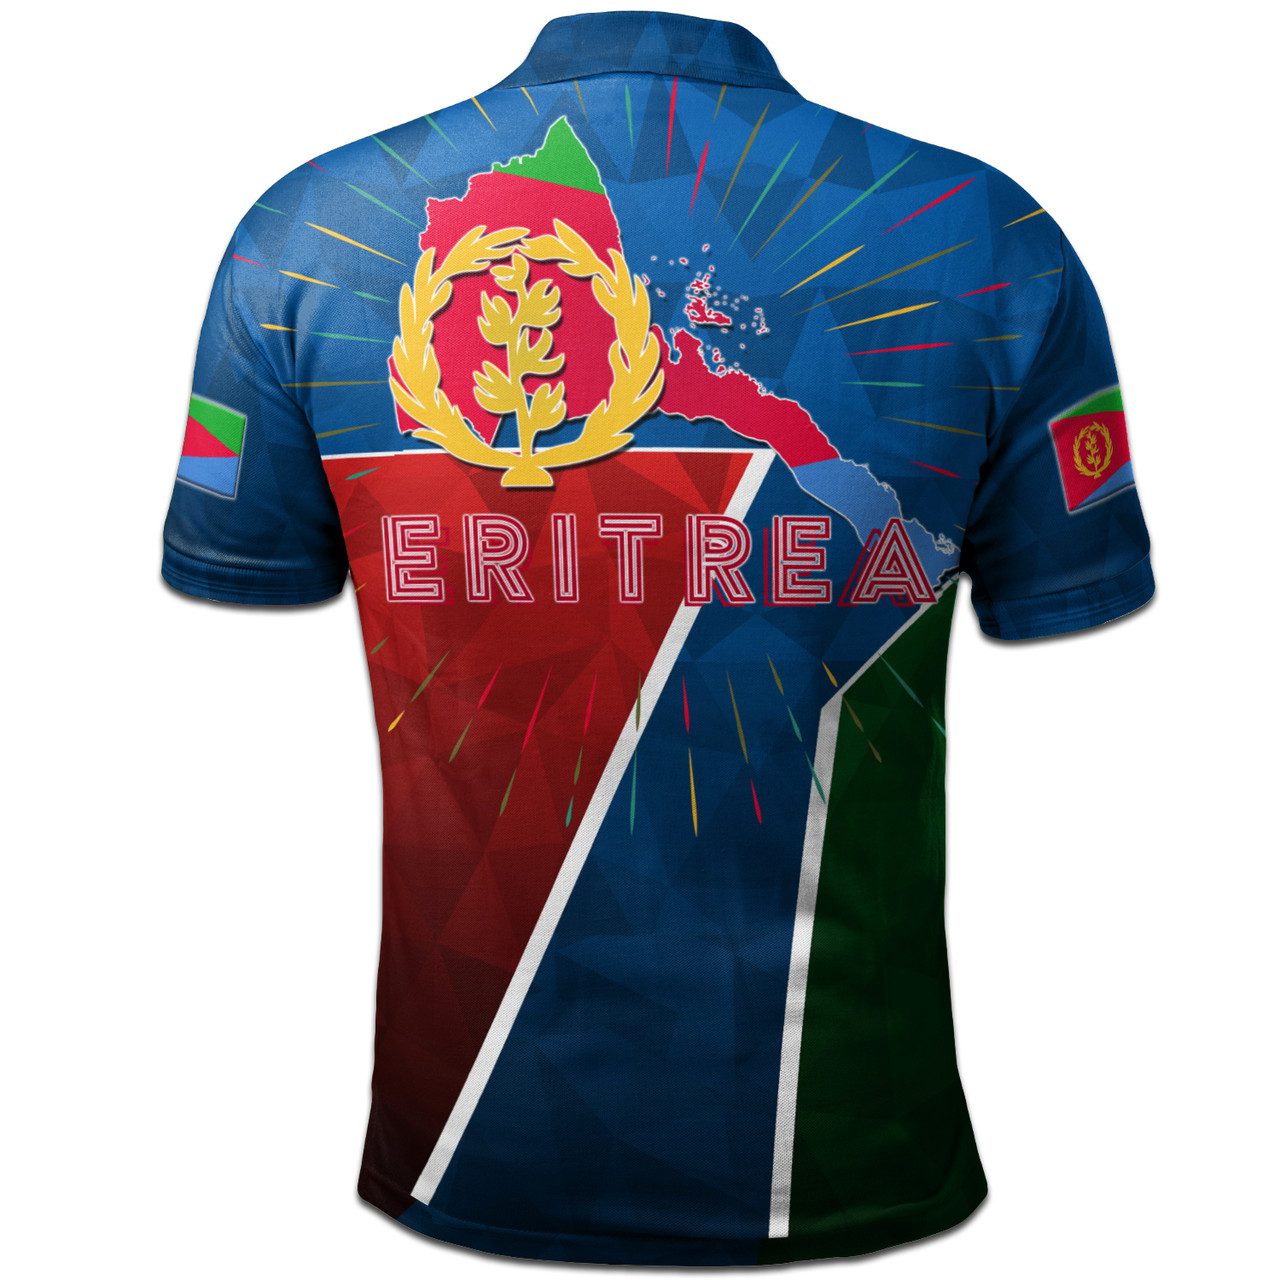 Eritrea Polo Shirt – Africa Eritrea Pride Polo Shirt